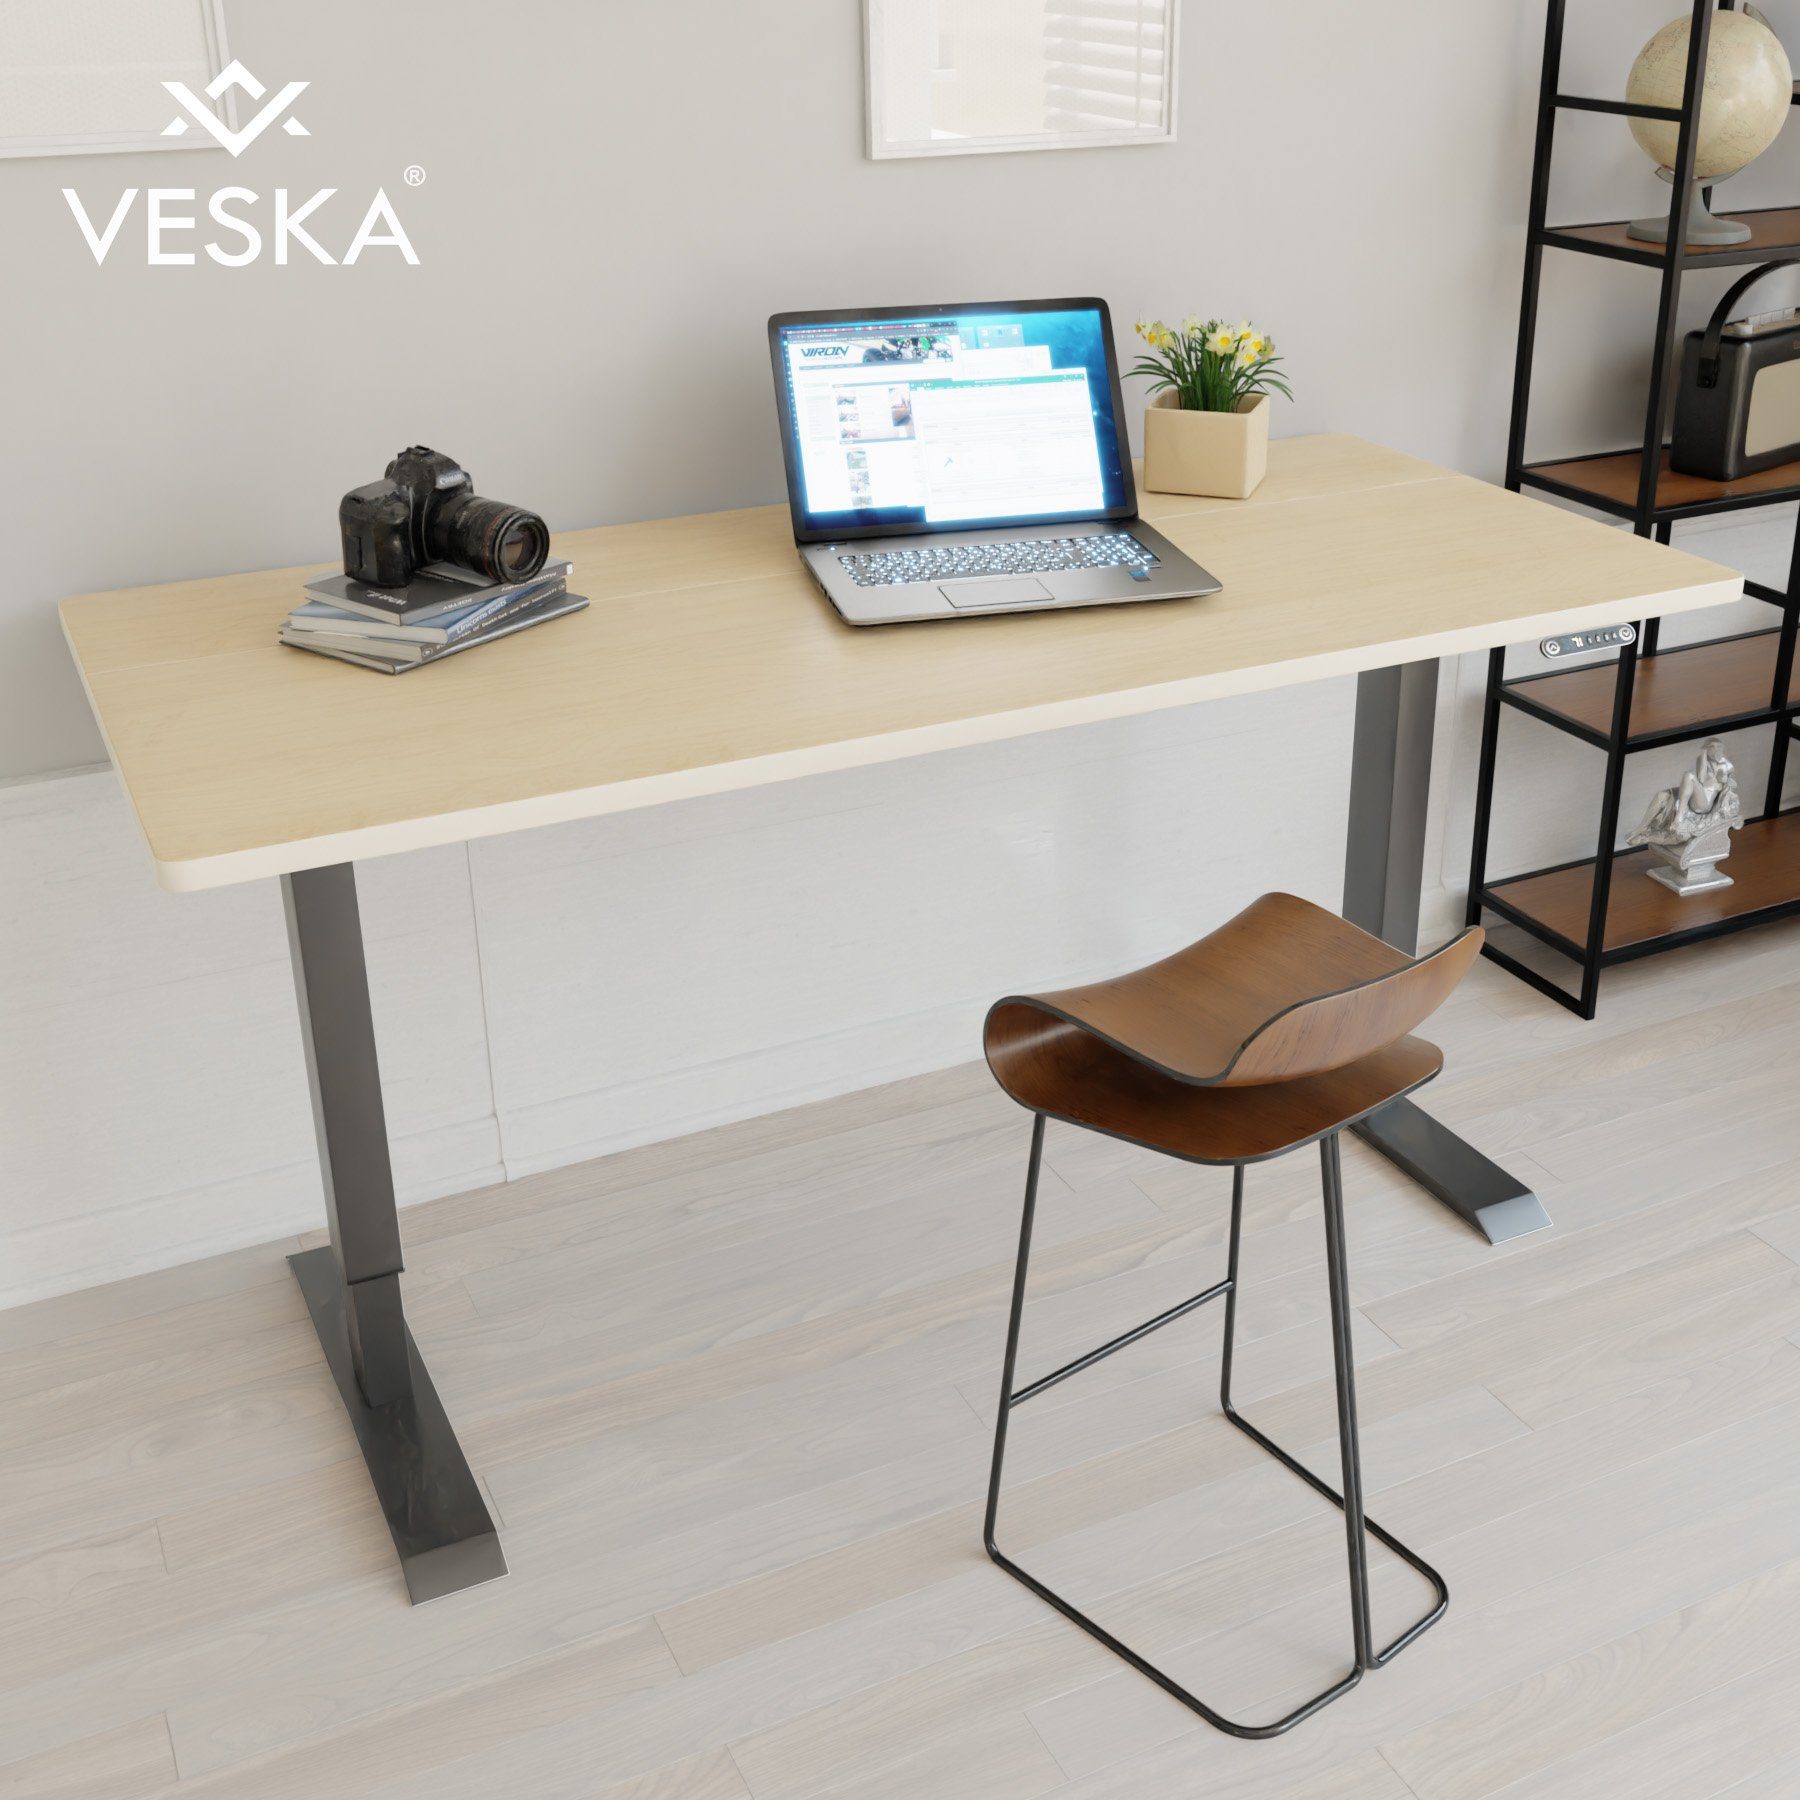 VESKA Schreibtisch Höhenverstellbar 140 x 70 cm - Bürotisch Elektrisch mit Touchscreen - Sitz- & Stehpult Home Office Anthrazit | Bambus